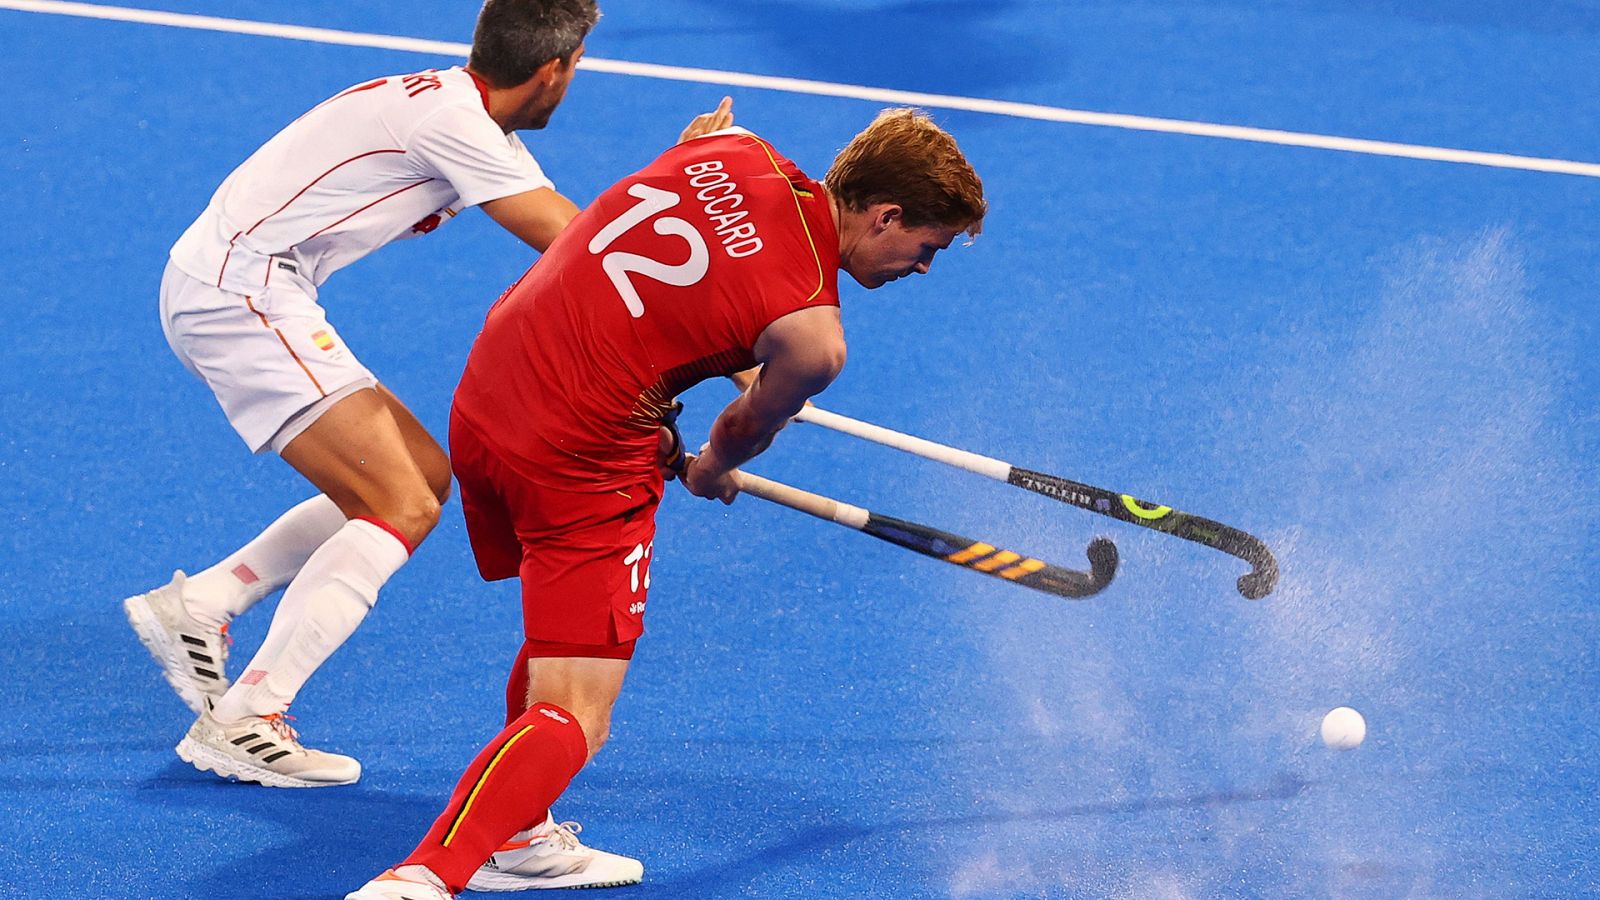 Hockey hierba Masculino. Cuartos de final: España - Bélgica | Tokio 2020